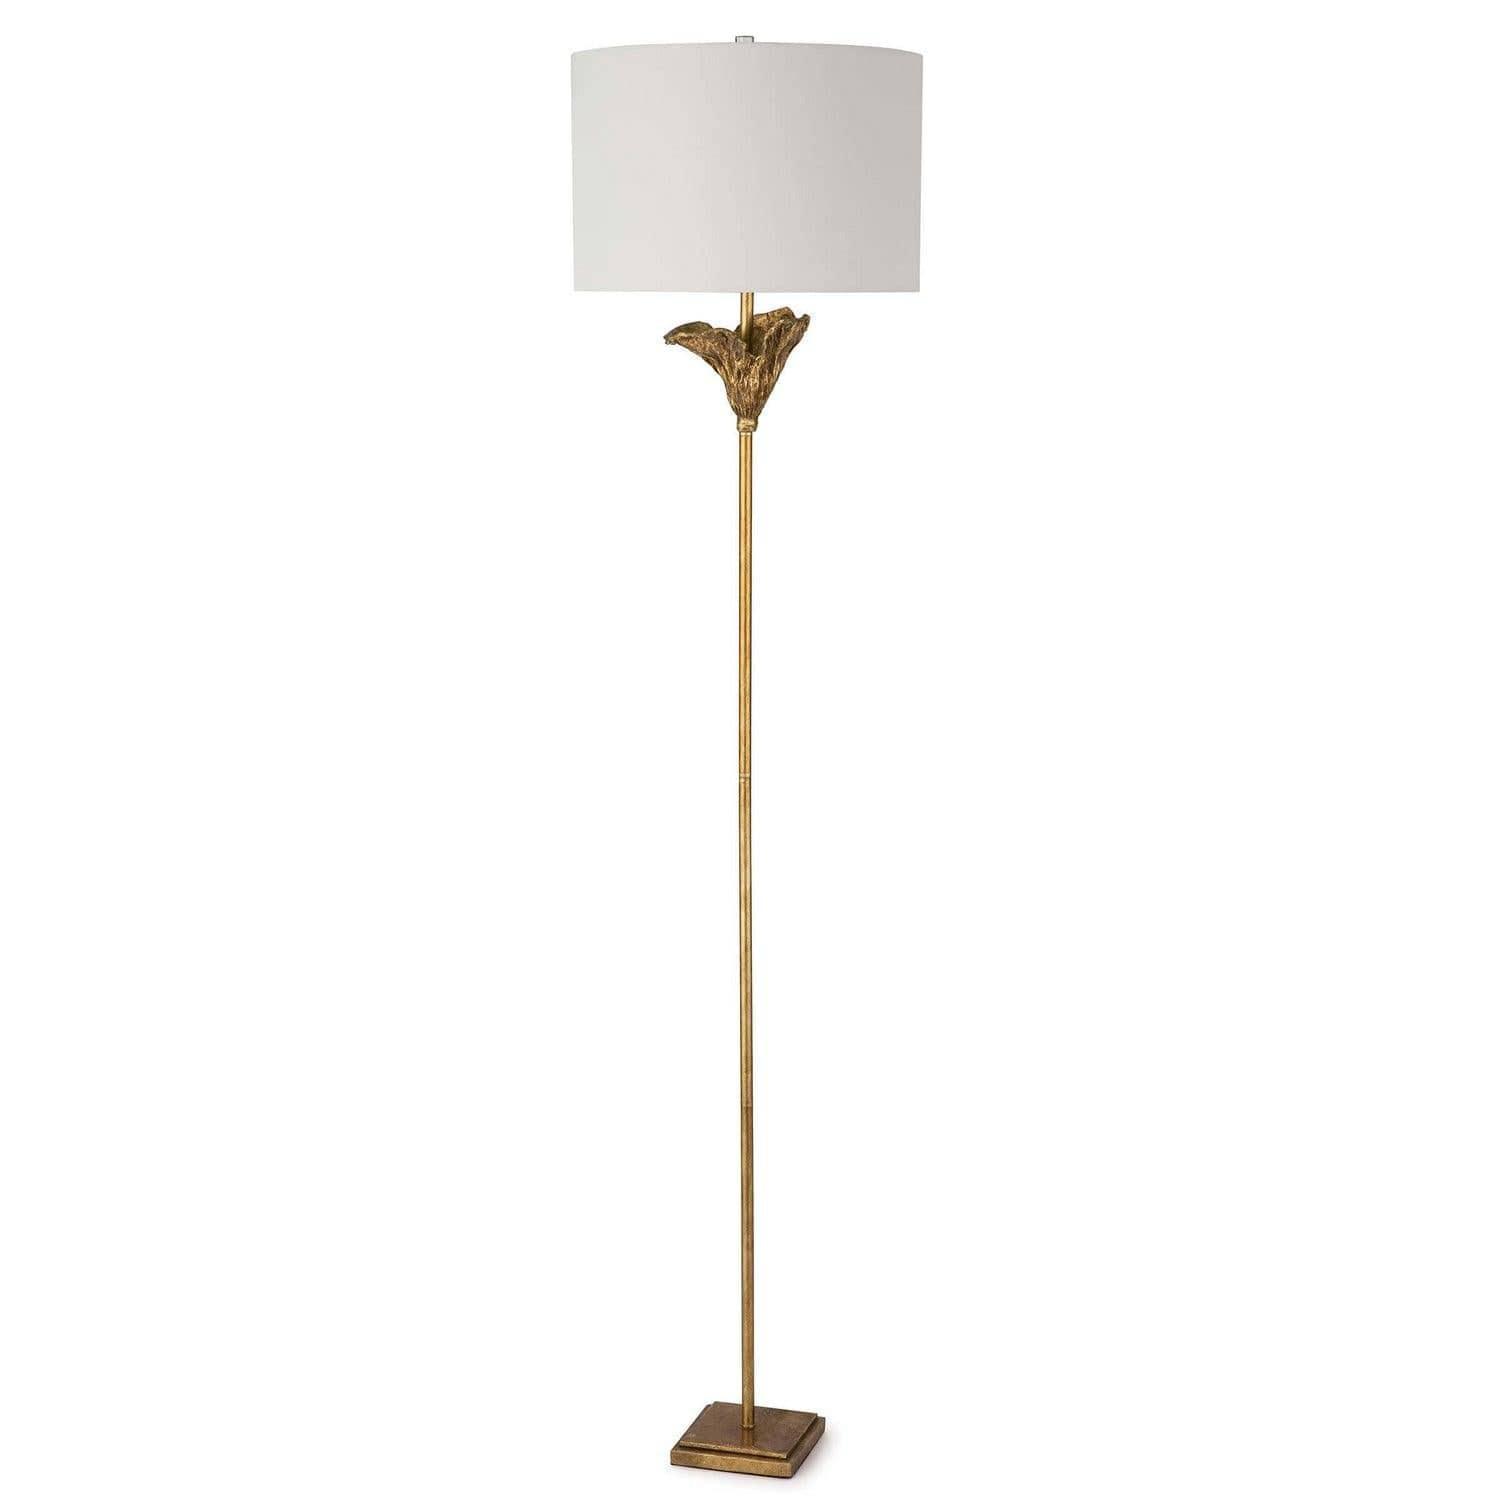 Regina Andrew - Monet Floor Lamp - 14-1037 | Montreal Lighting & Hardware